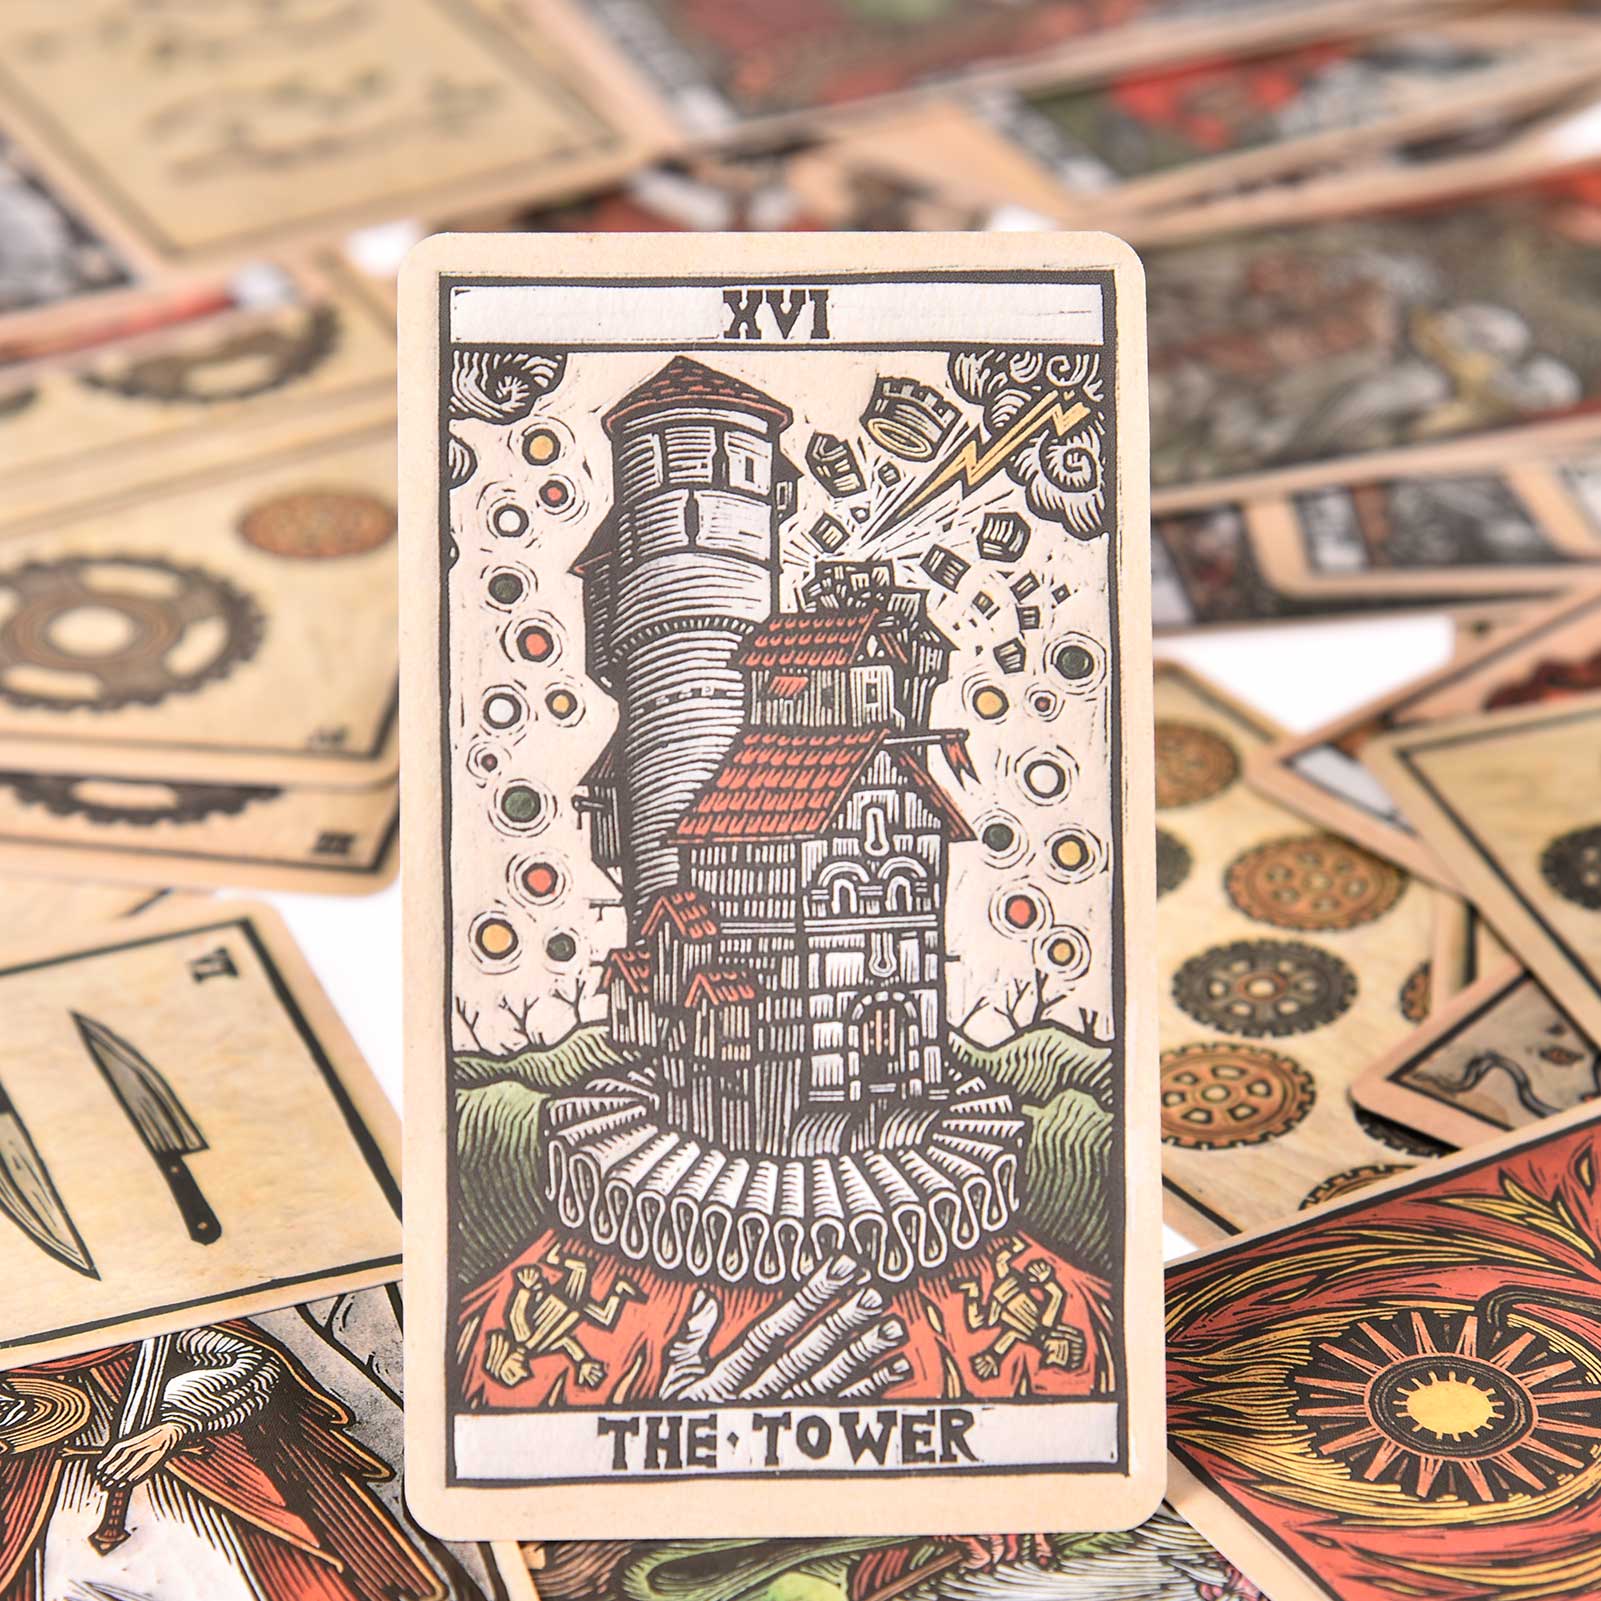 Imaginative Tarot Cards Featuring both Major Minor Arcana Set